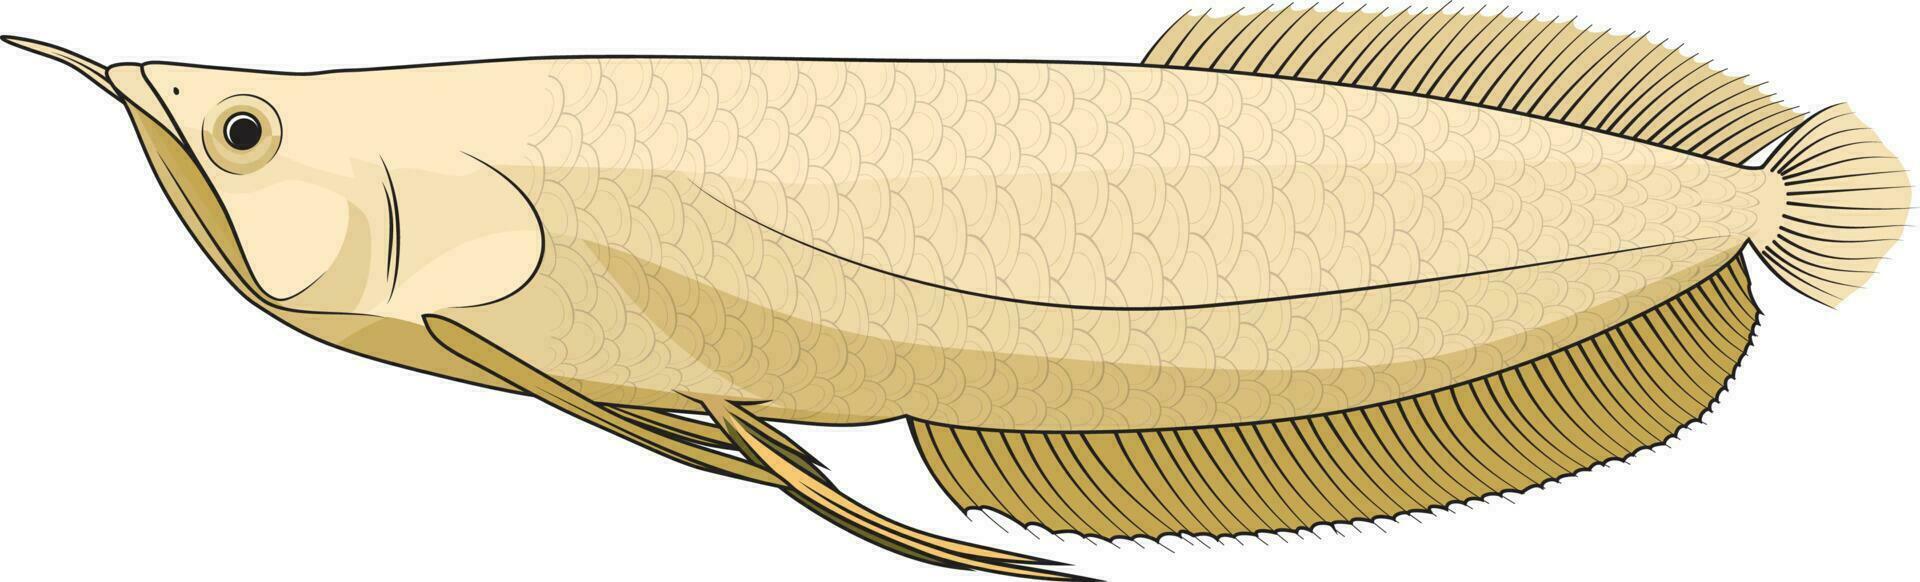 argento arowana pesce vettore illustrazione osteoglosso bicirroso predatore pesce vettore Immagine